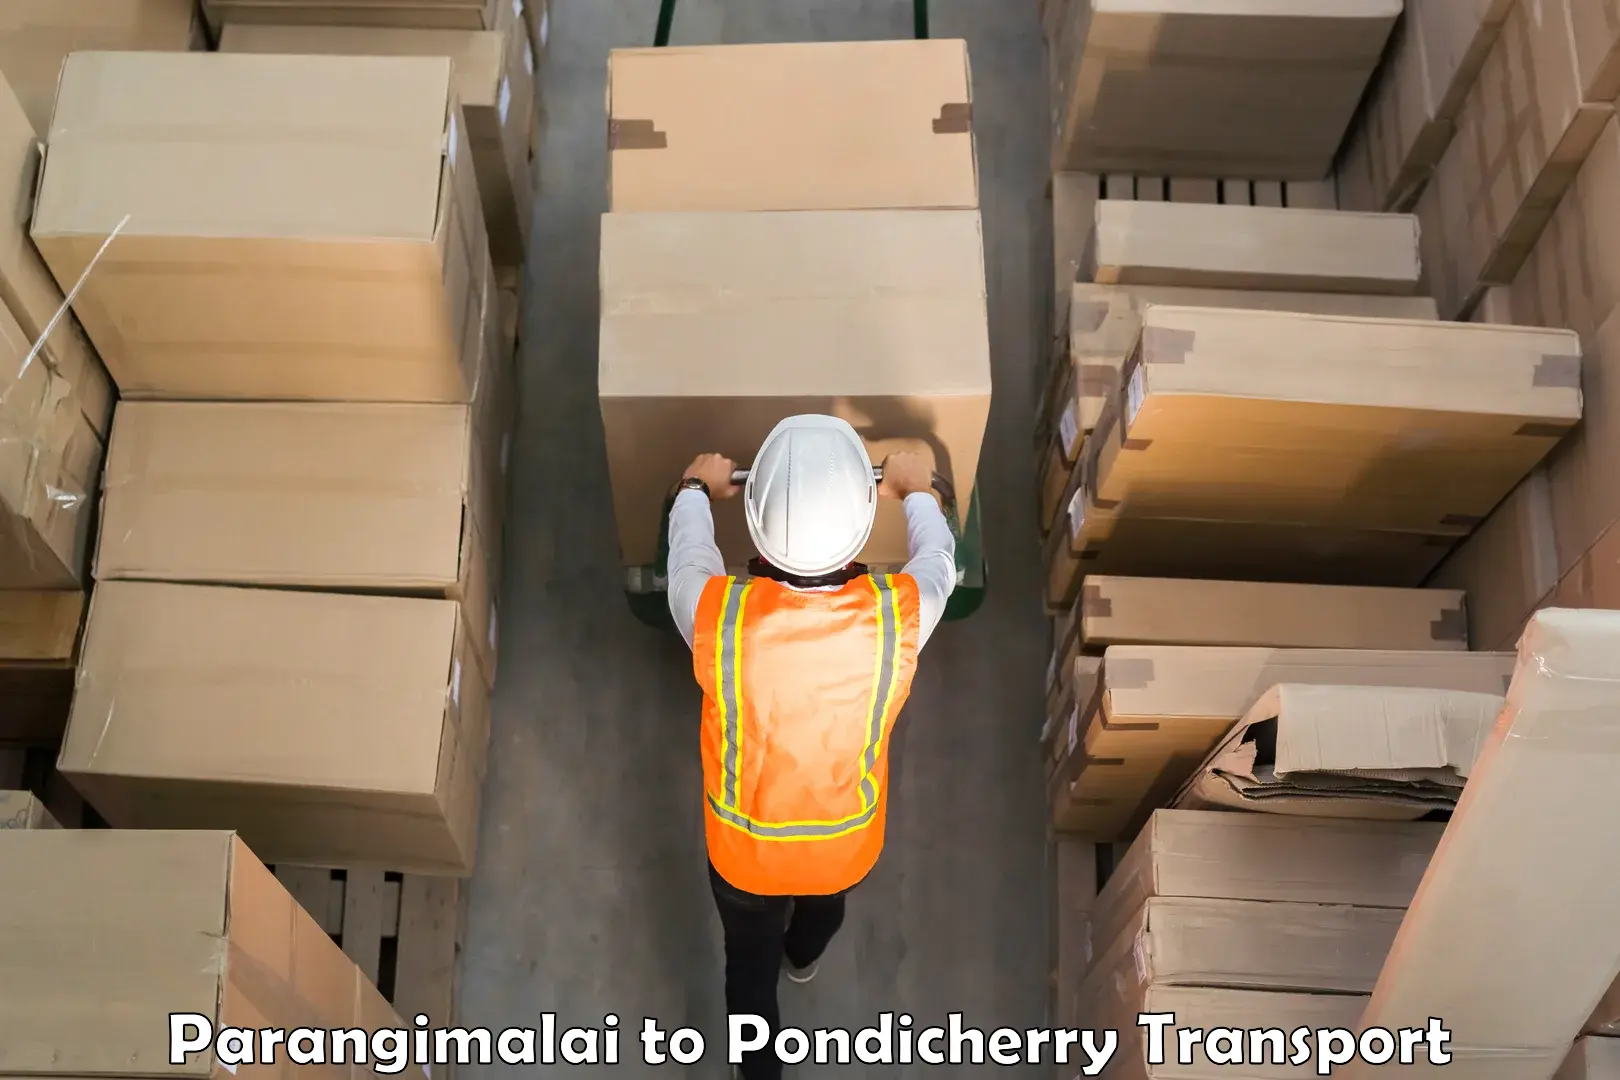 Commercial transport service Parangimalai to Karaikal